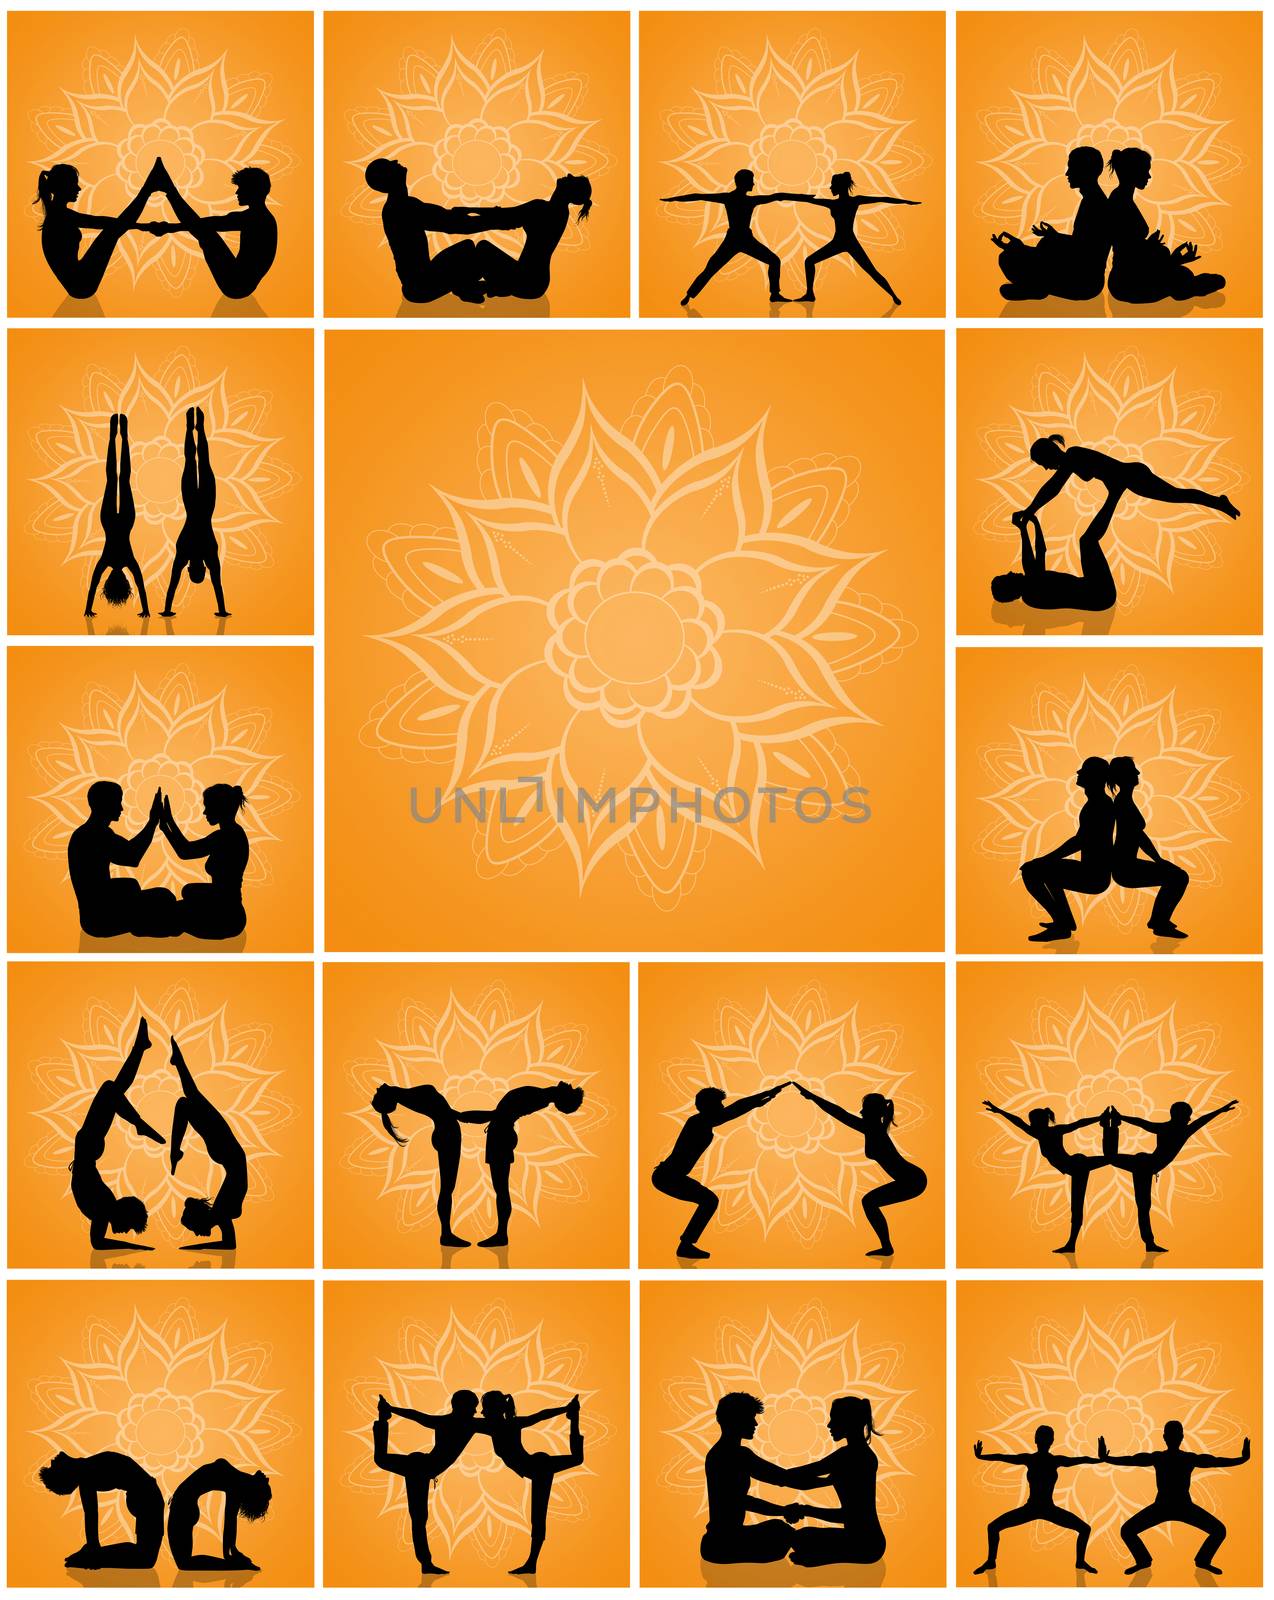 various yoga poses by adrenalina